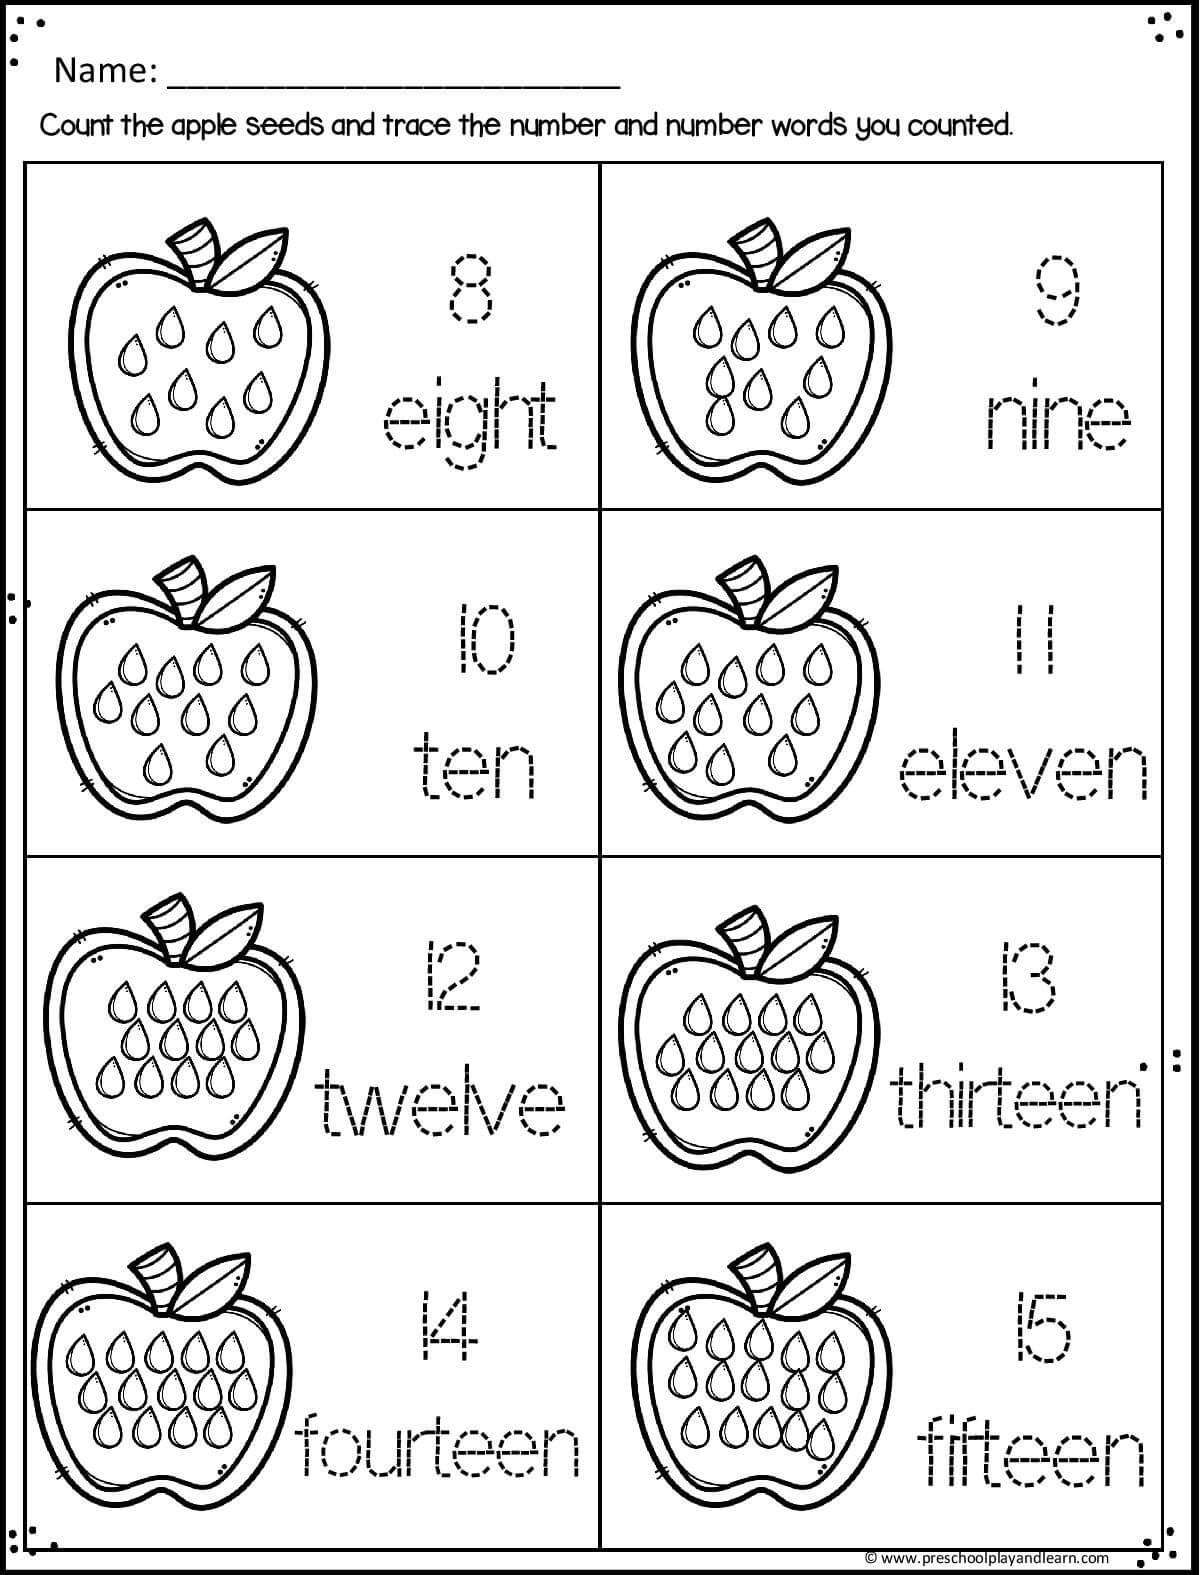 apple-worksheet-preschool-pack